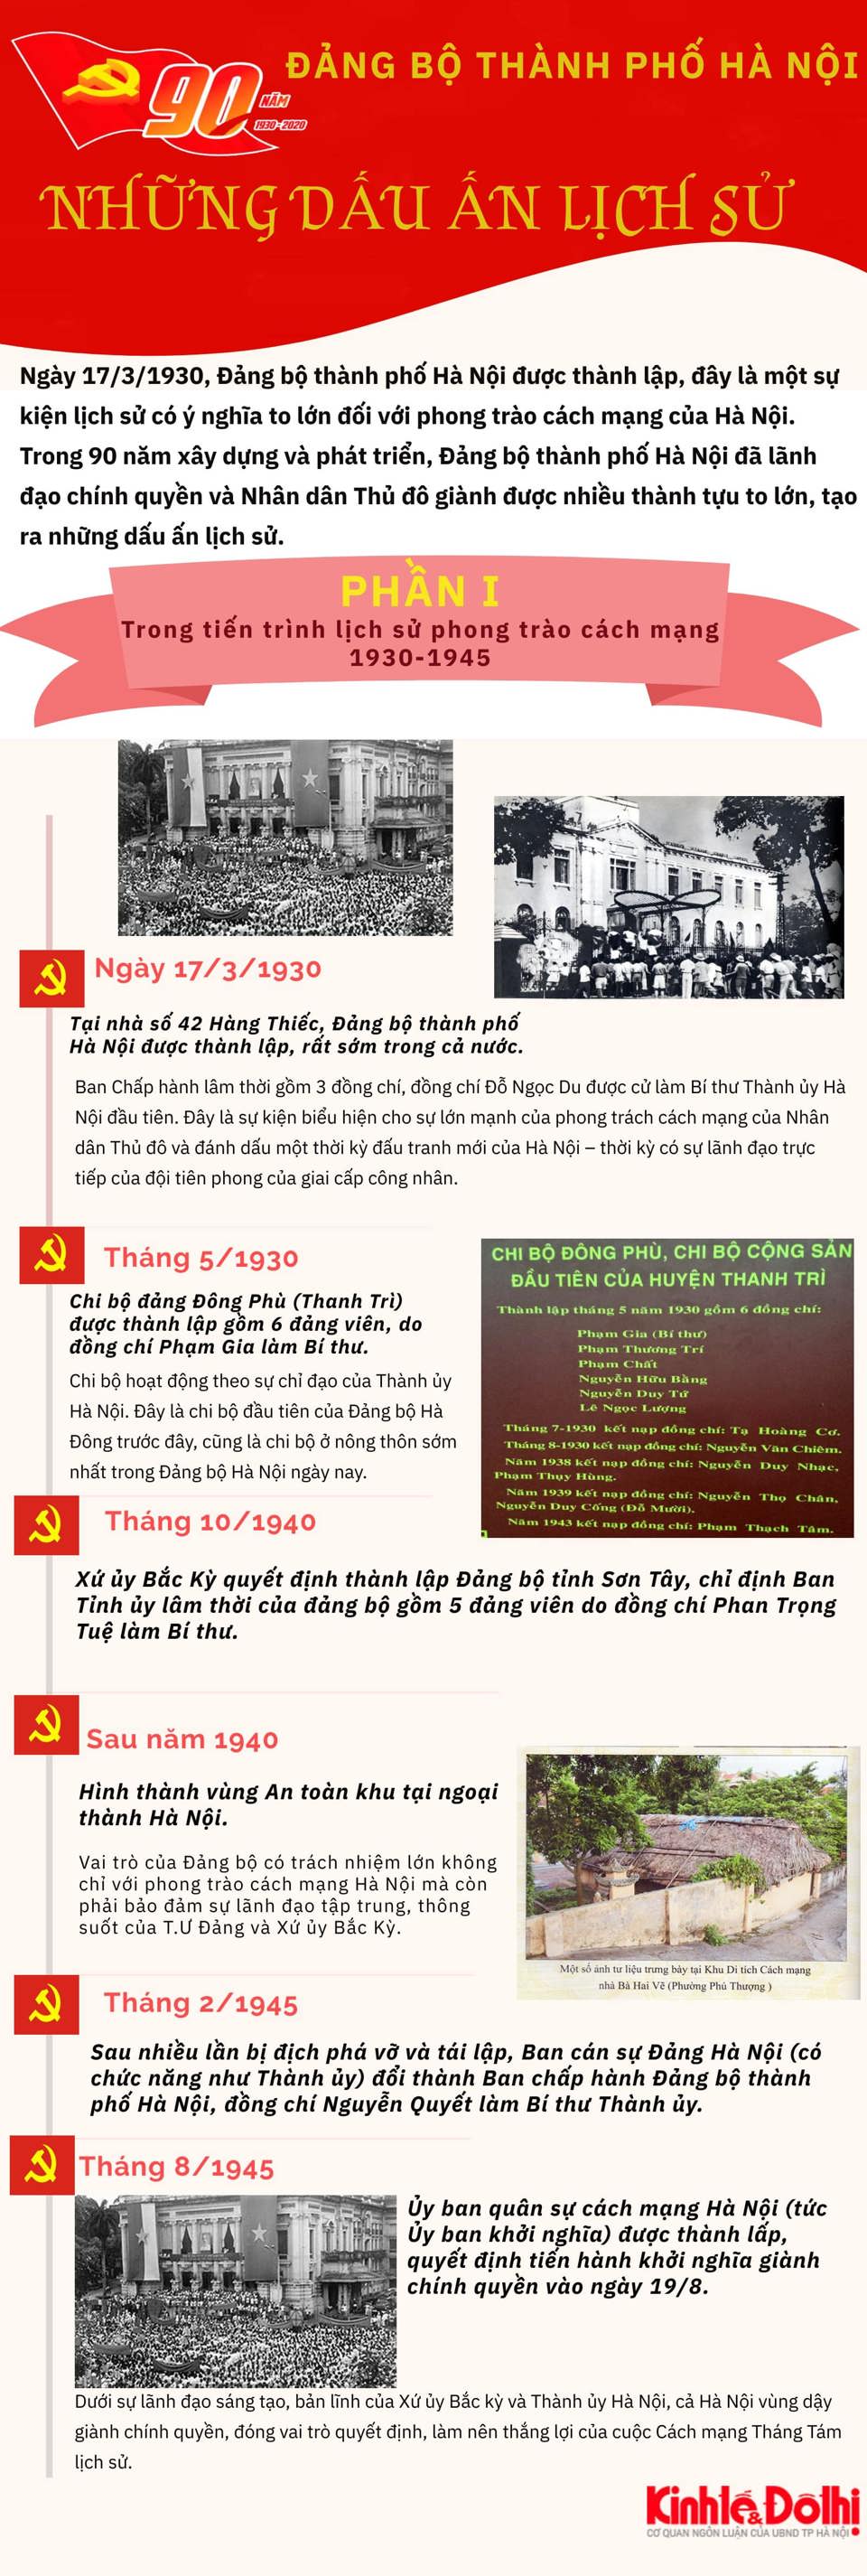 [Infographic] 90 năm Đảng bộ Thành phố Hà Nội: Những dấu ấn lịch sử (phần 1) - Ảnh 1